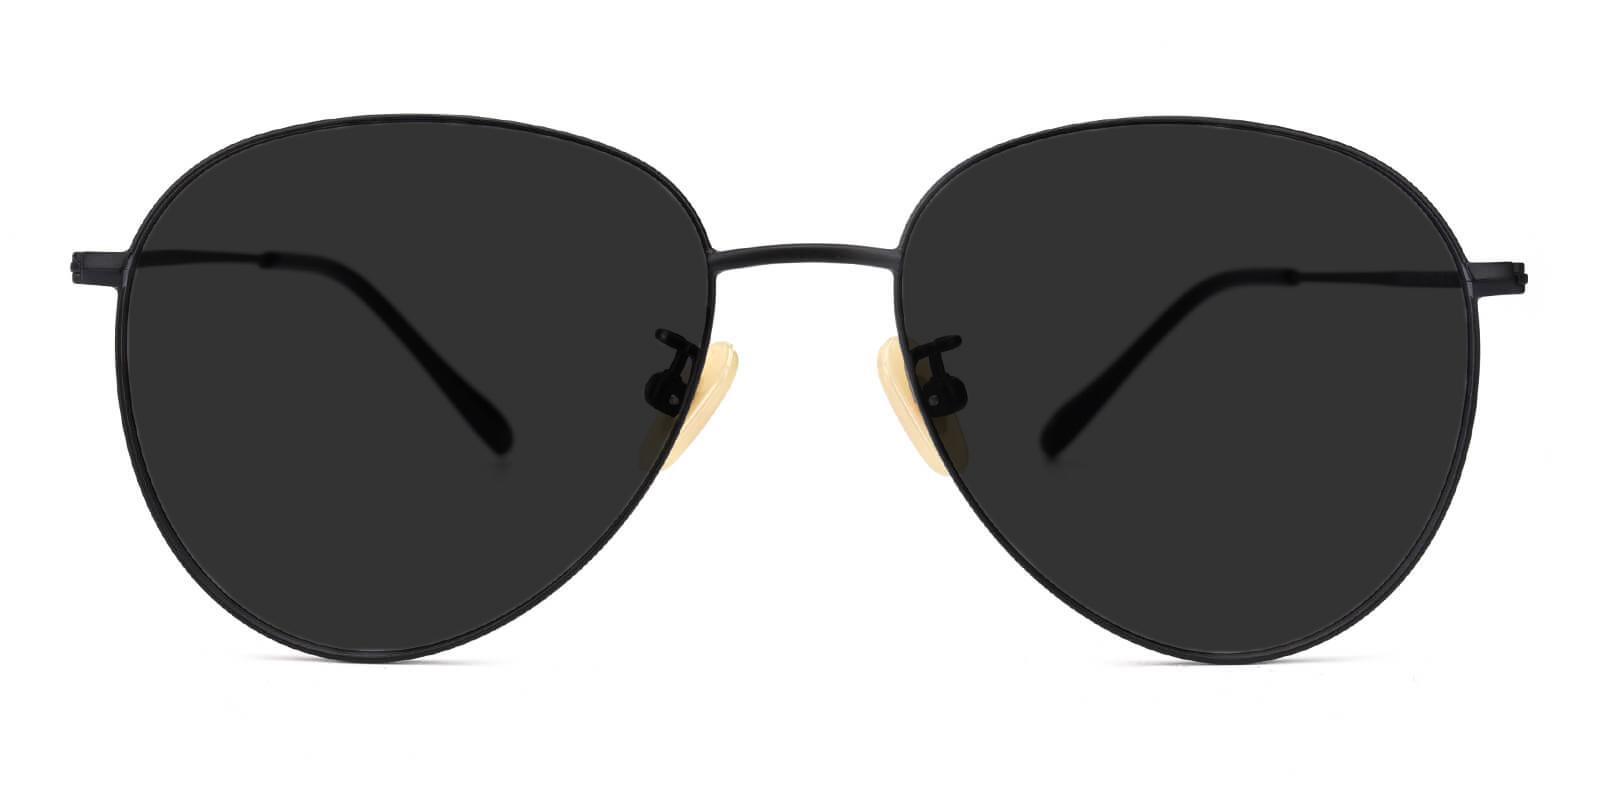 Pico Rivera Prescription Sunglasses Front